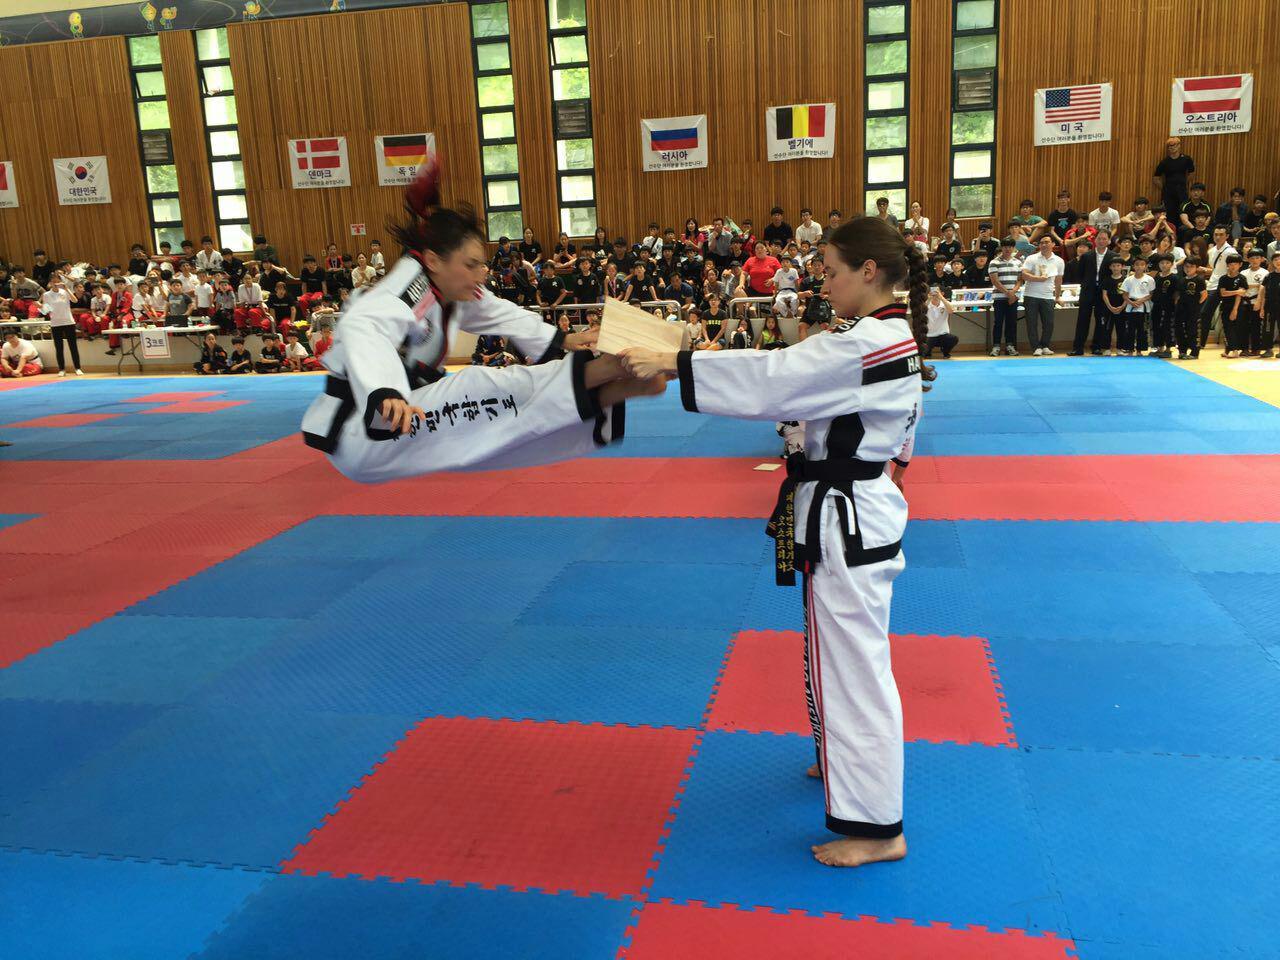 Bruchtest (Kyokpa). Internationale Meisterschaften in Korea, 2016. Hapkido ist eine koreanische Kampfkunst zur Selbstverteidigung.